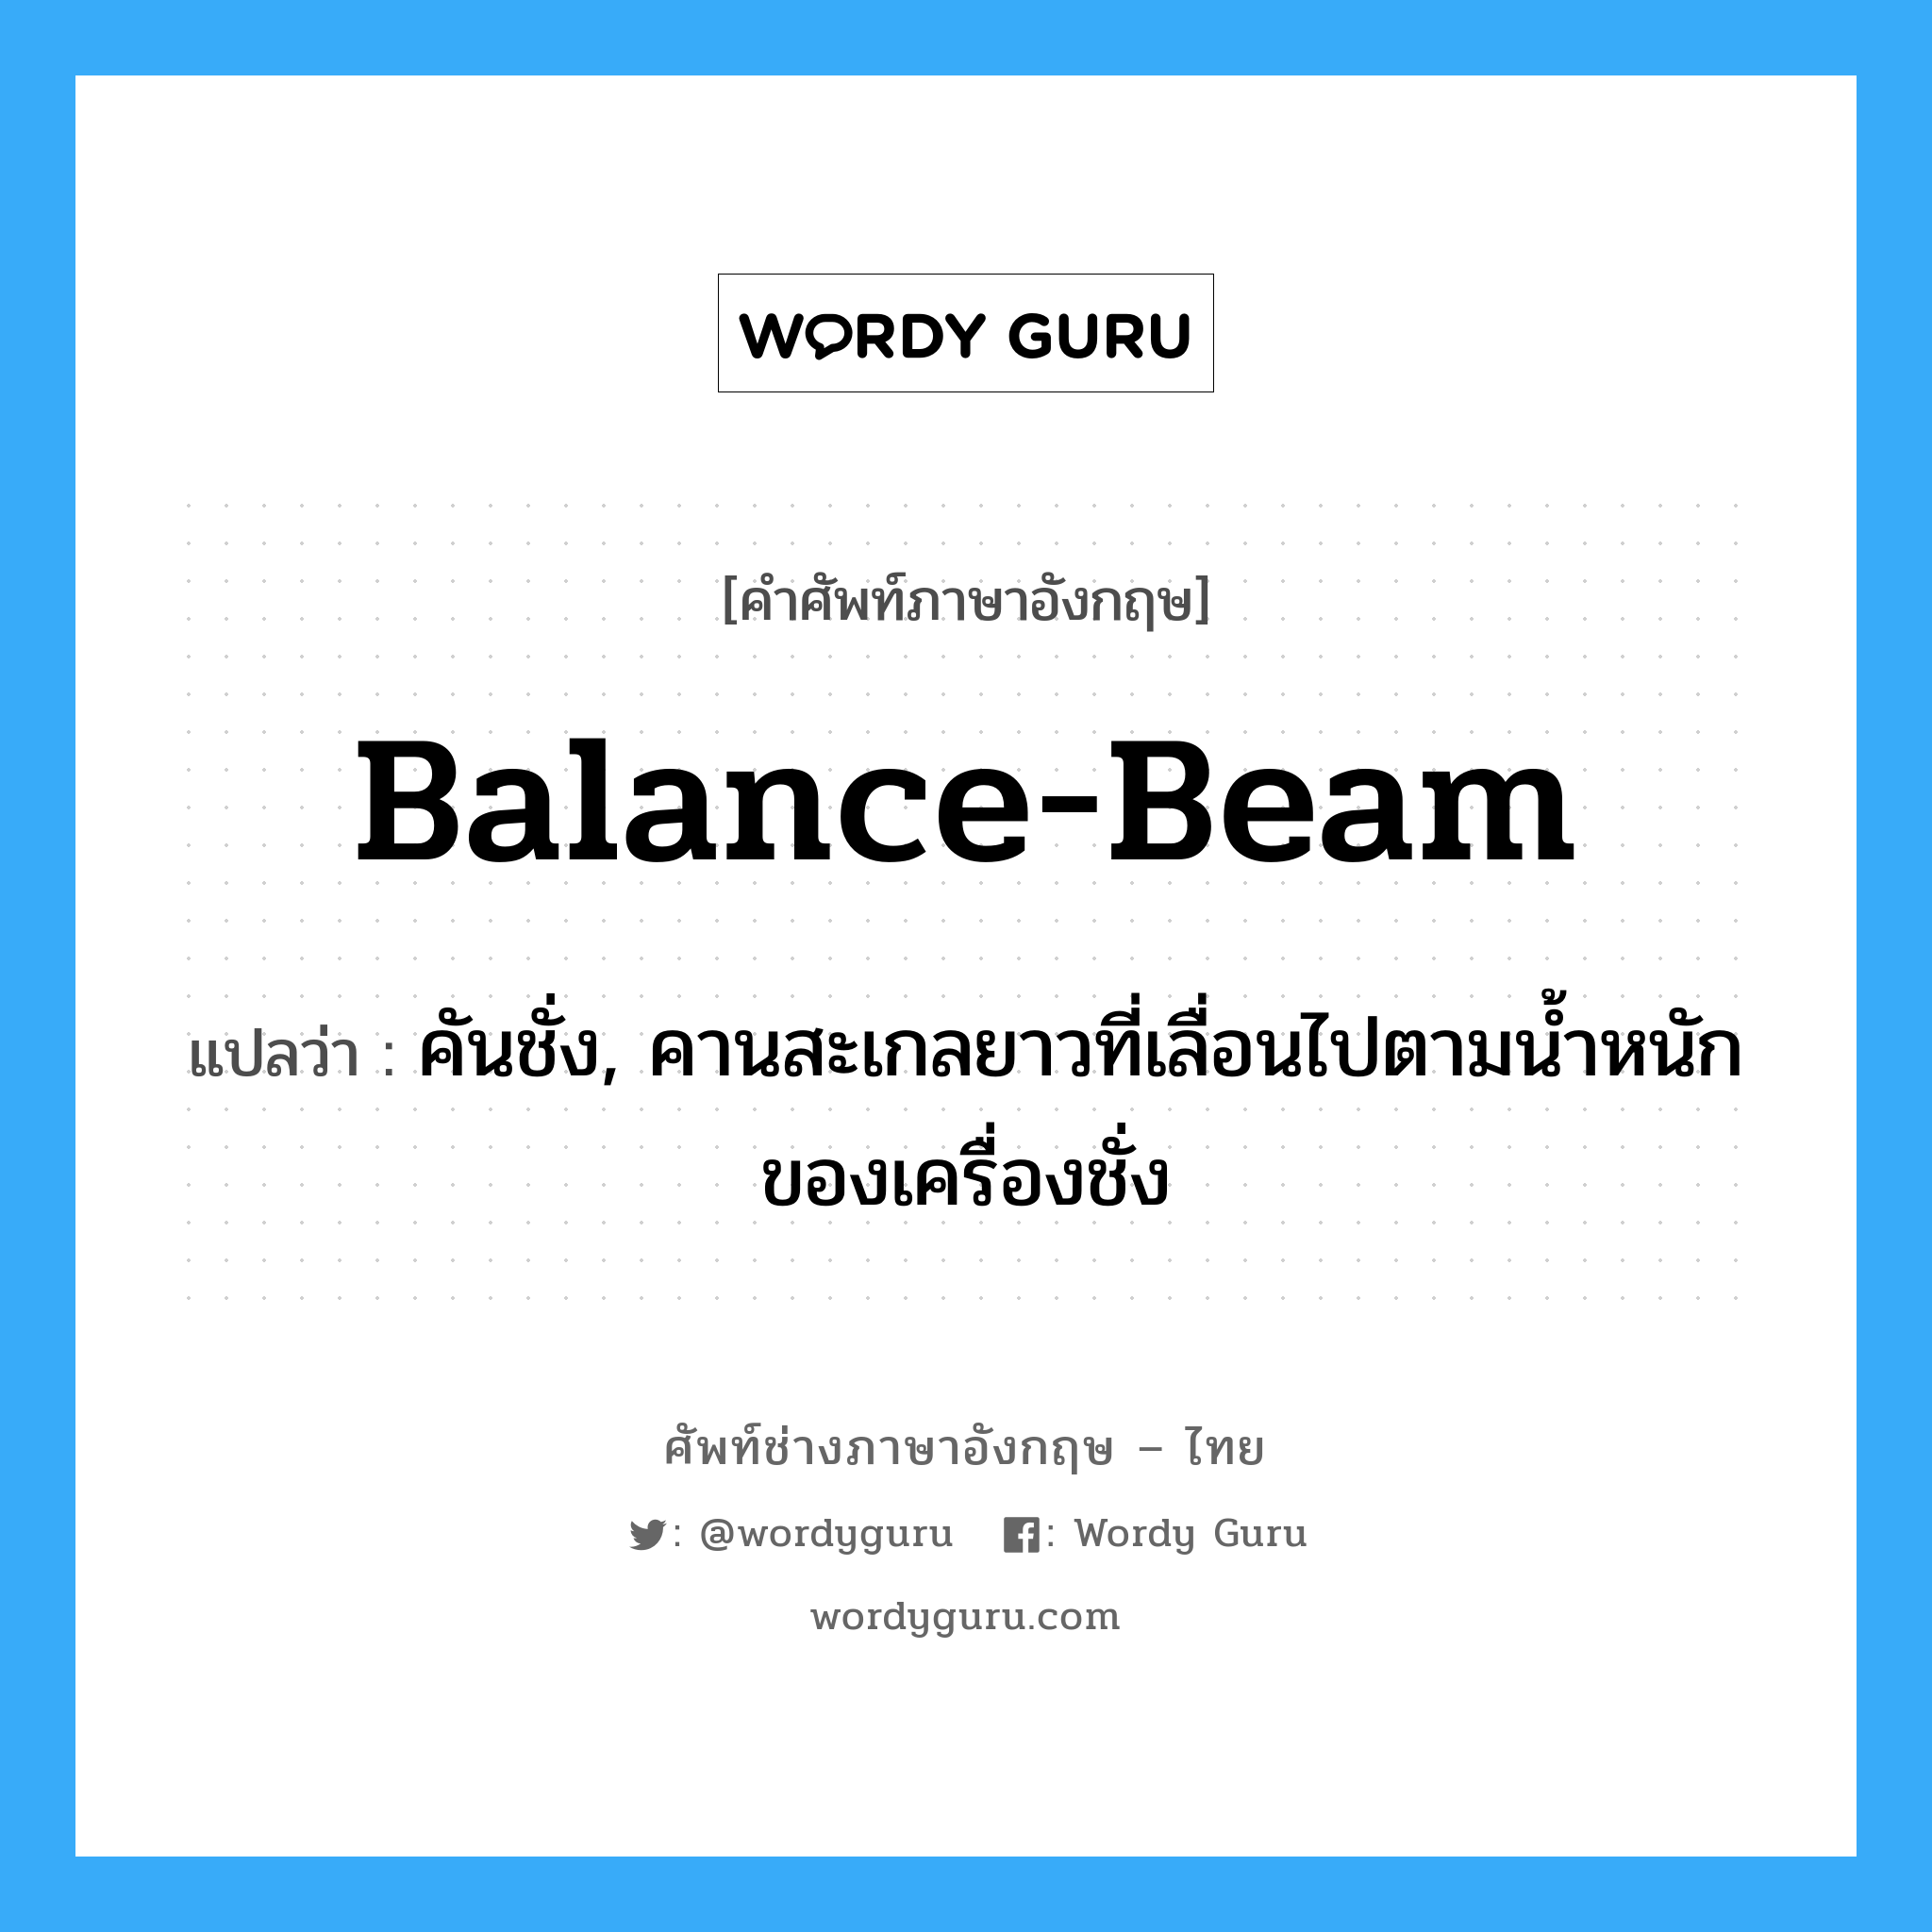 balance beam แปลว่า?, คำศัพท์ช่างภาษาอังกฤษ - ไทย balance-beam คำศัพท์ภาษาอังกฤษ balance-beam แปลว่า คันชั่ง, คานสะเกลยาวที่เลื่อนไปตามน้ำหนักของเครื่องชั่ง